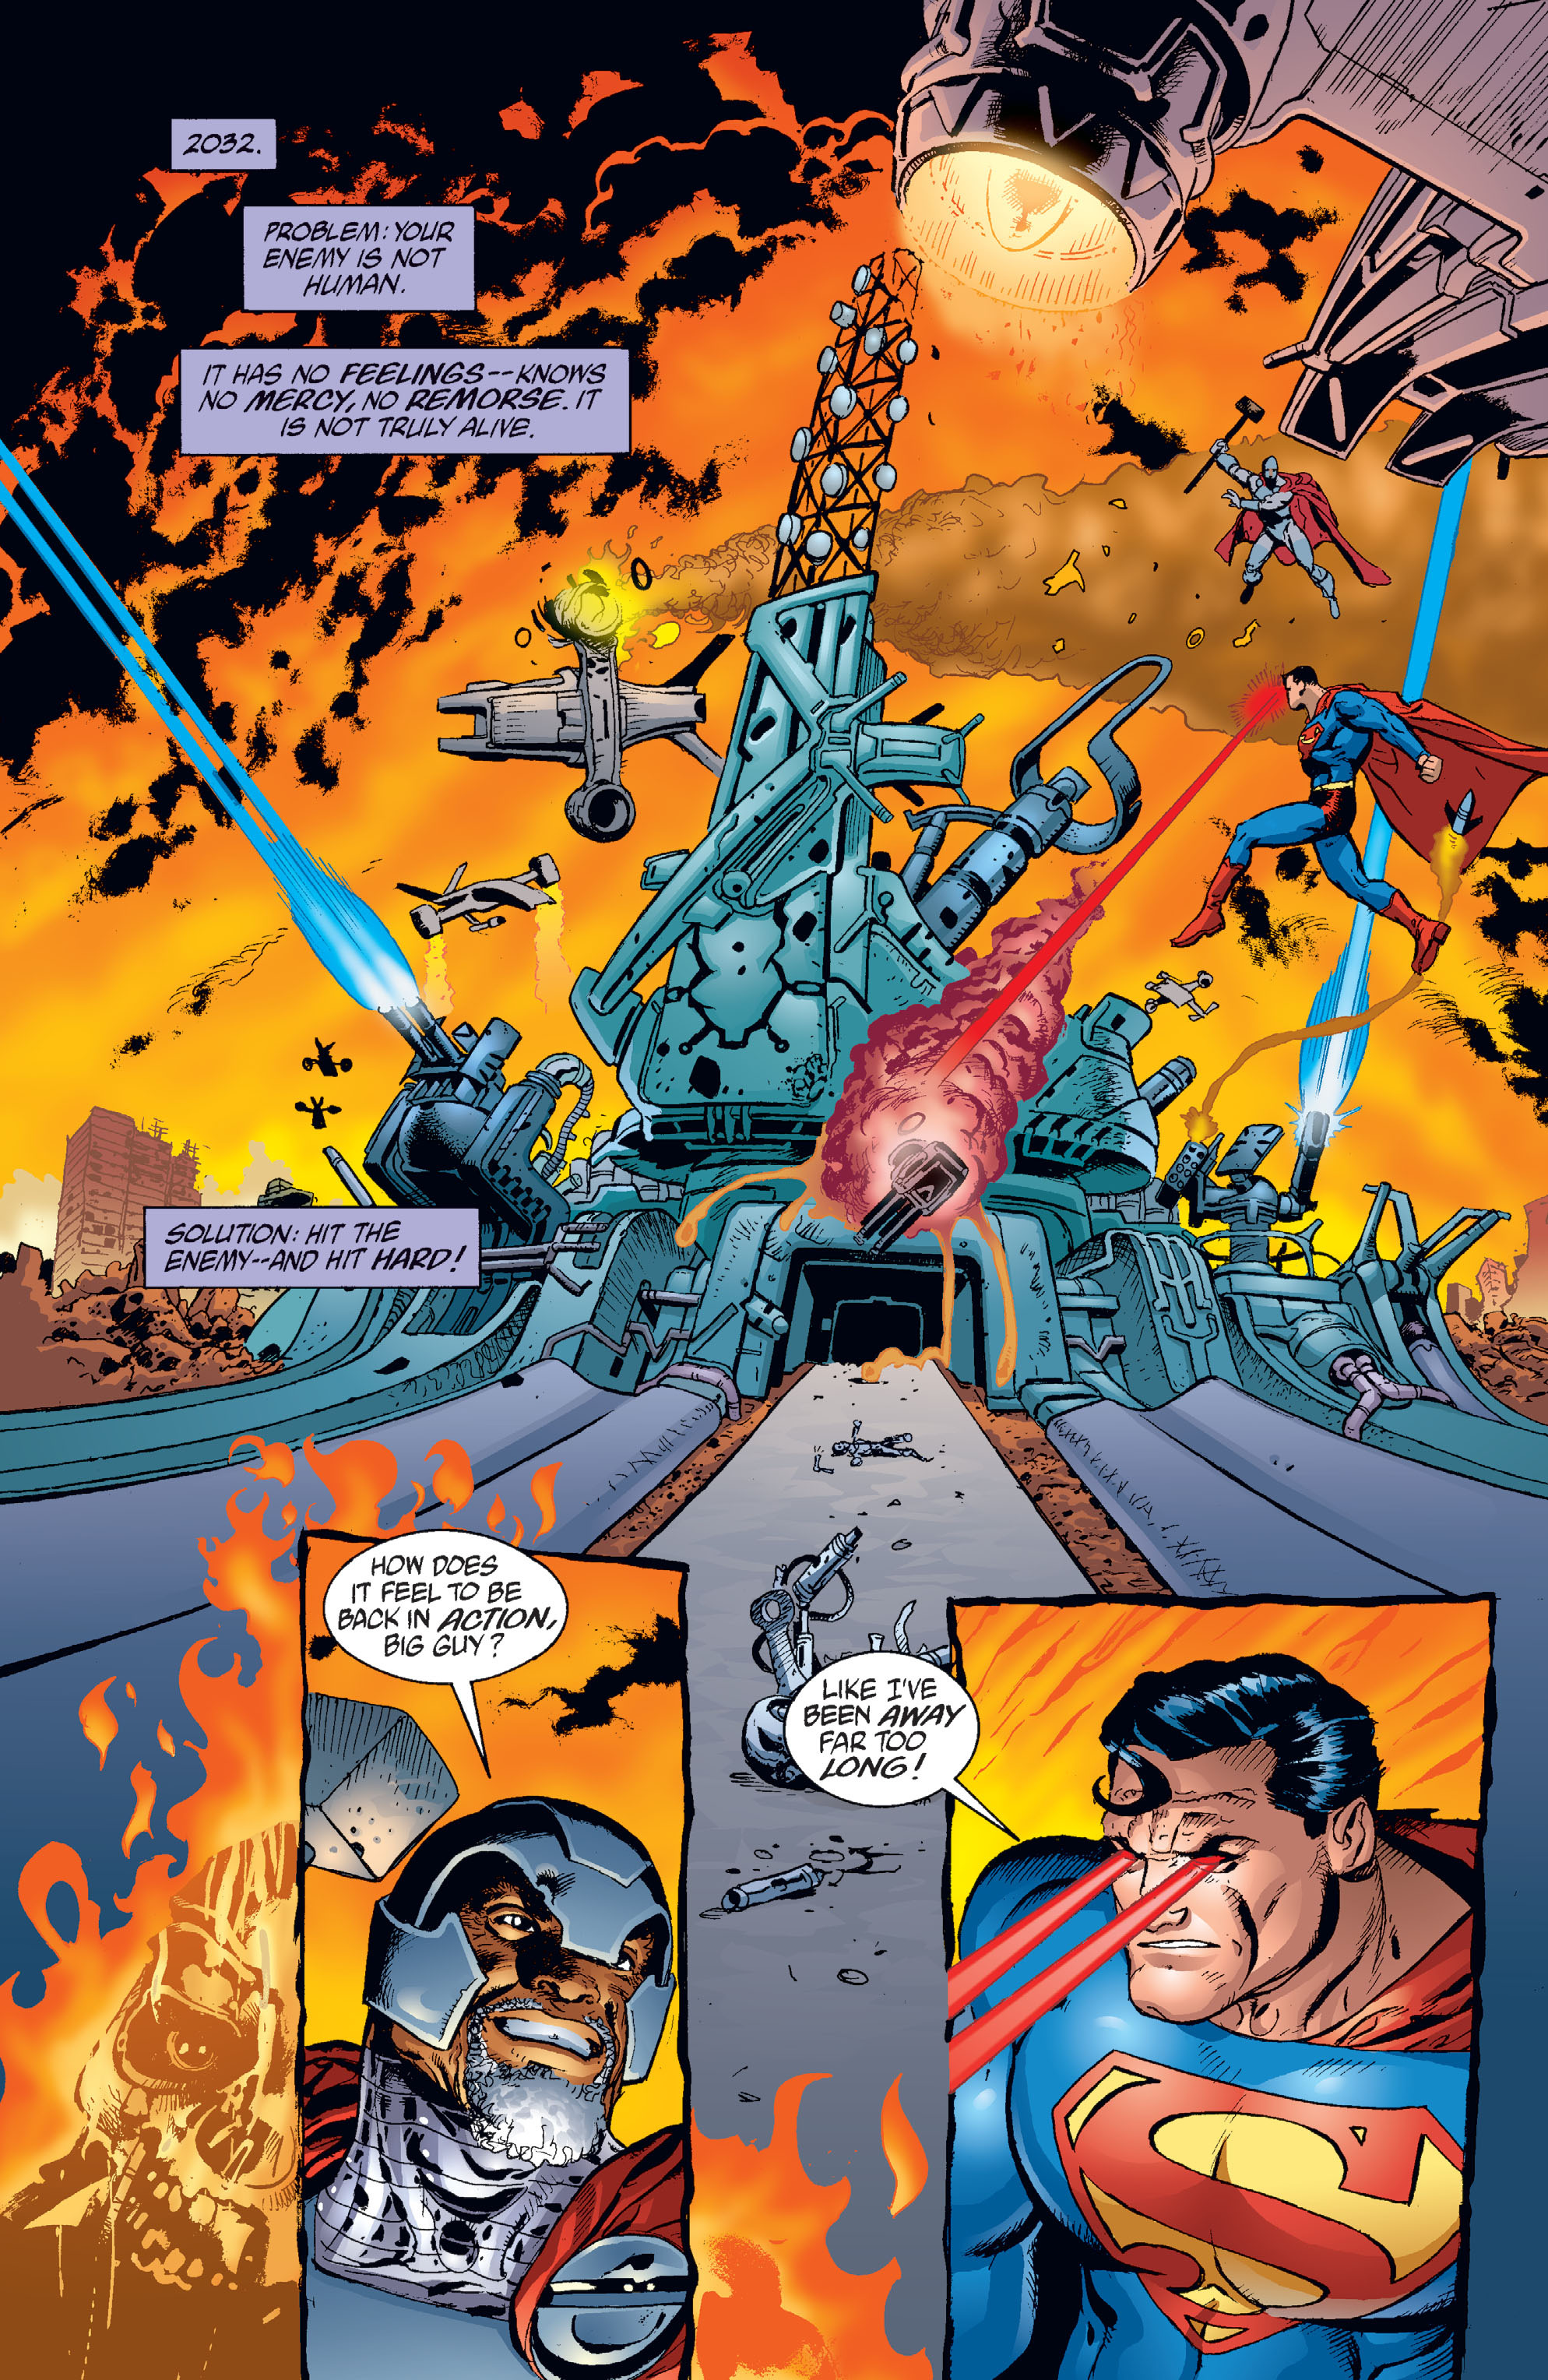 DC Comics/Dark Horse Comics: Justice League Full #1 - English 184